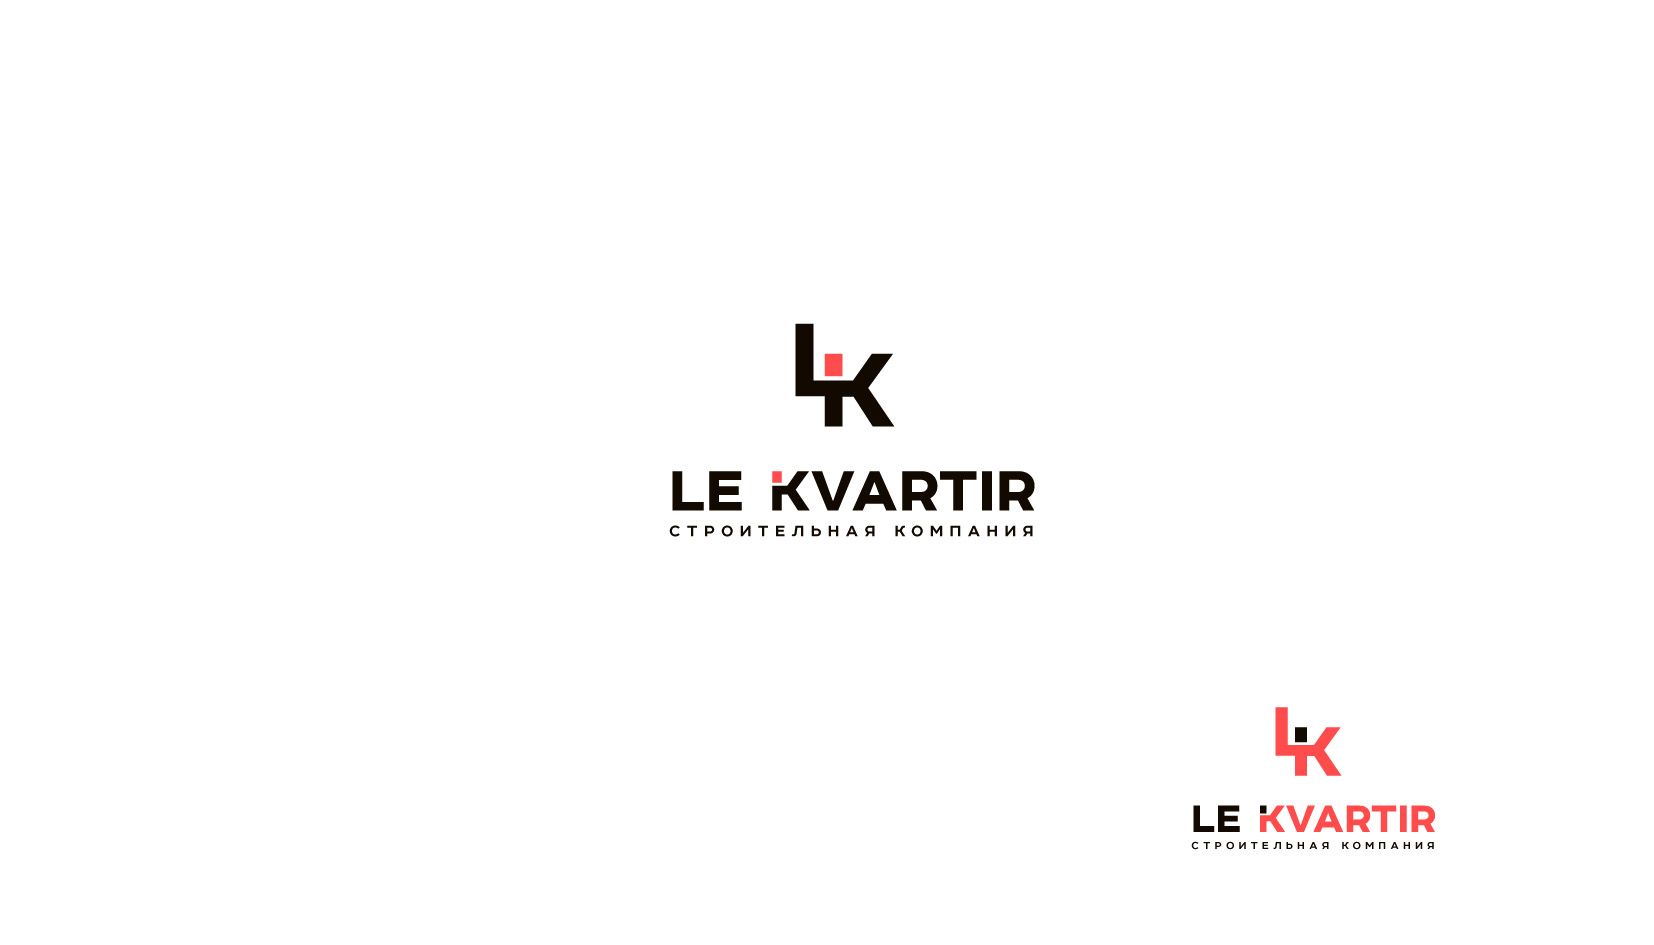 Лого и фирменный стиль для Ле Квартир - дизайнер andblin61